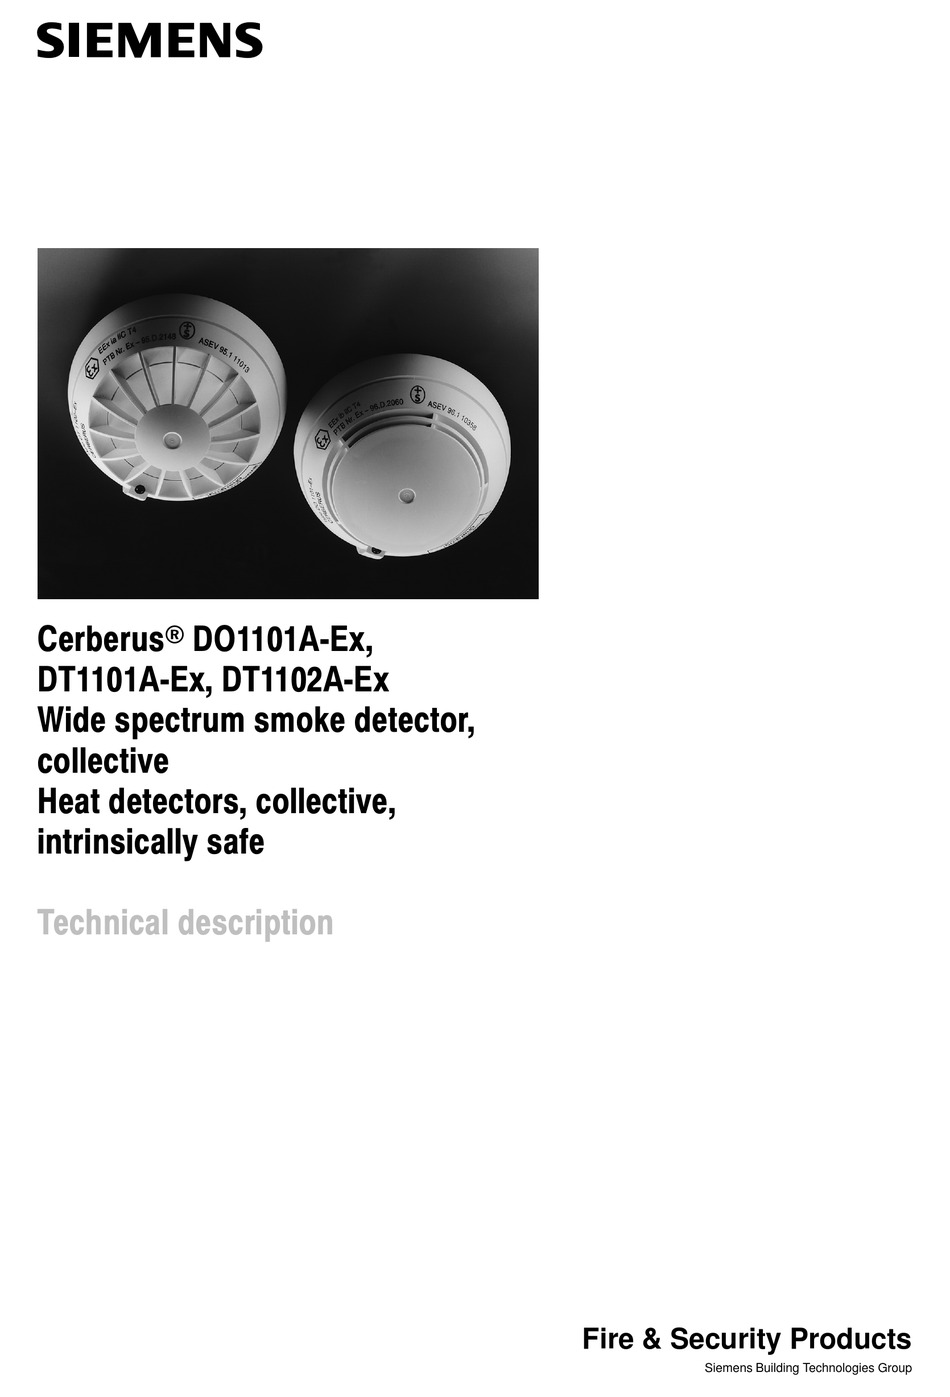 Siemens Do1101a Optical Smoke Detector 4930020001 